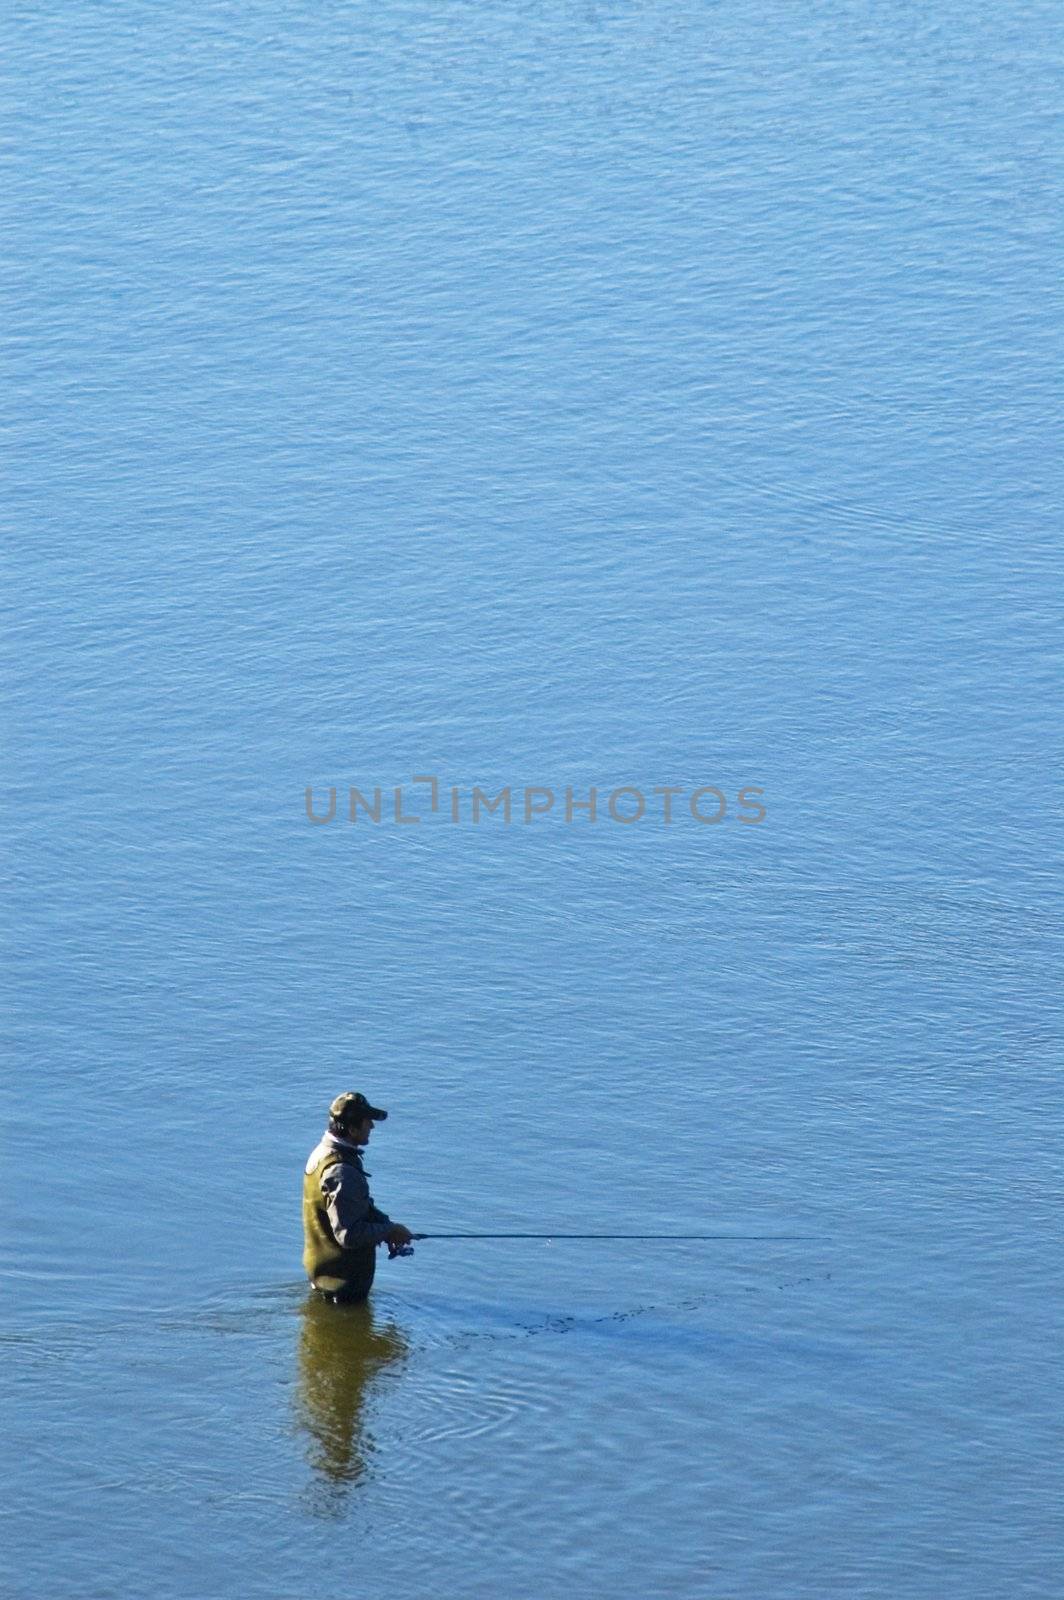 Fisherman go fishing in Vistula River.